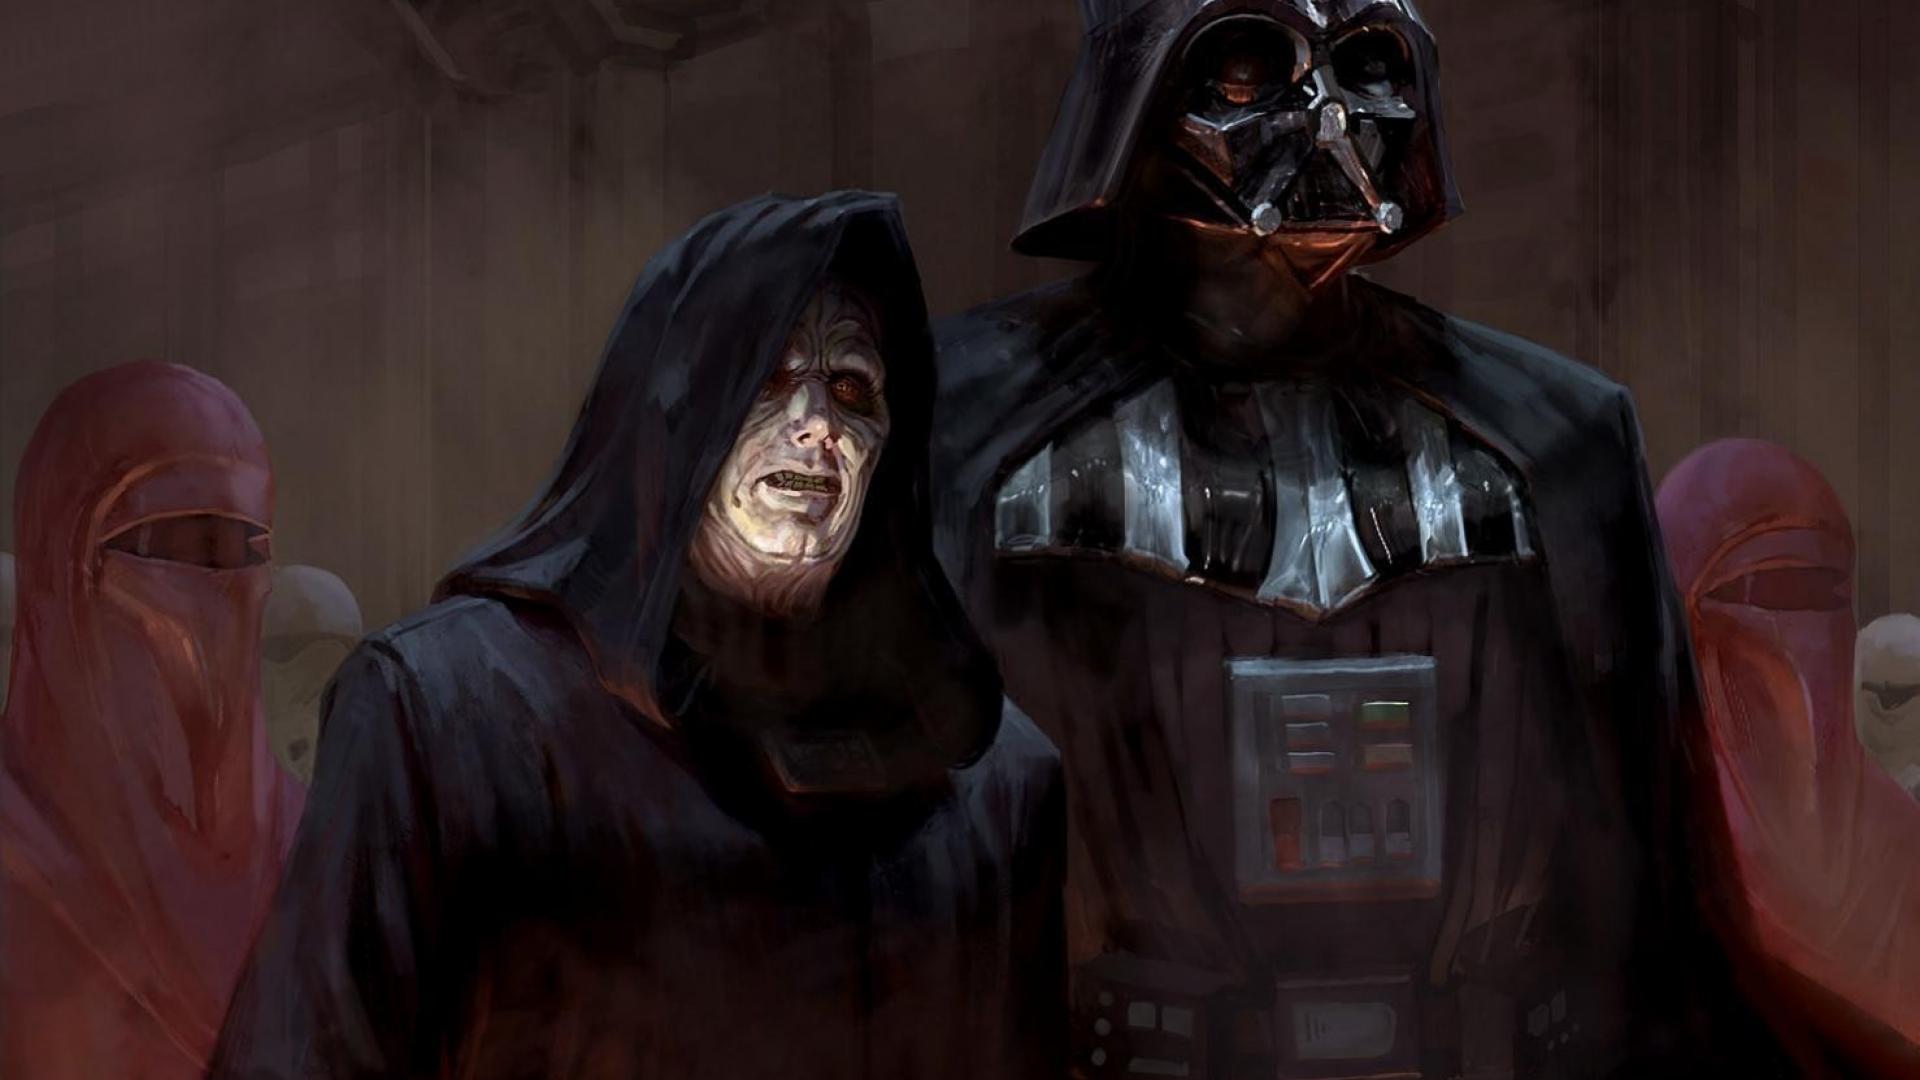 Darth Sidious Vader Star Wars Artwork Digital Art Wallpaper